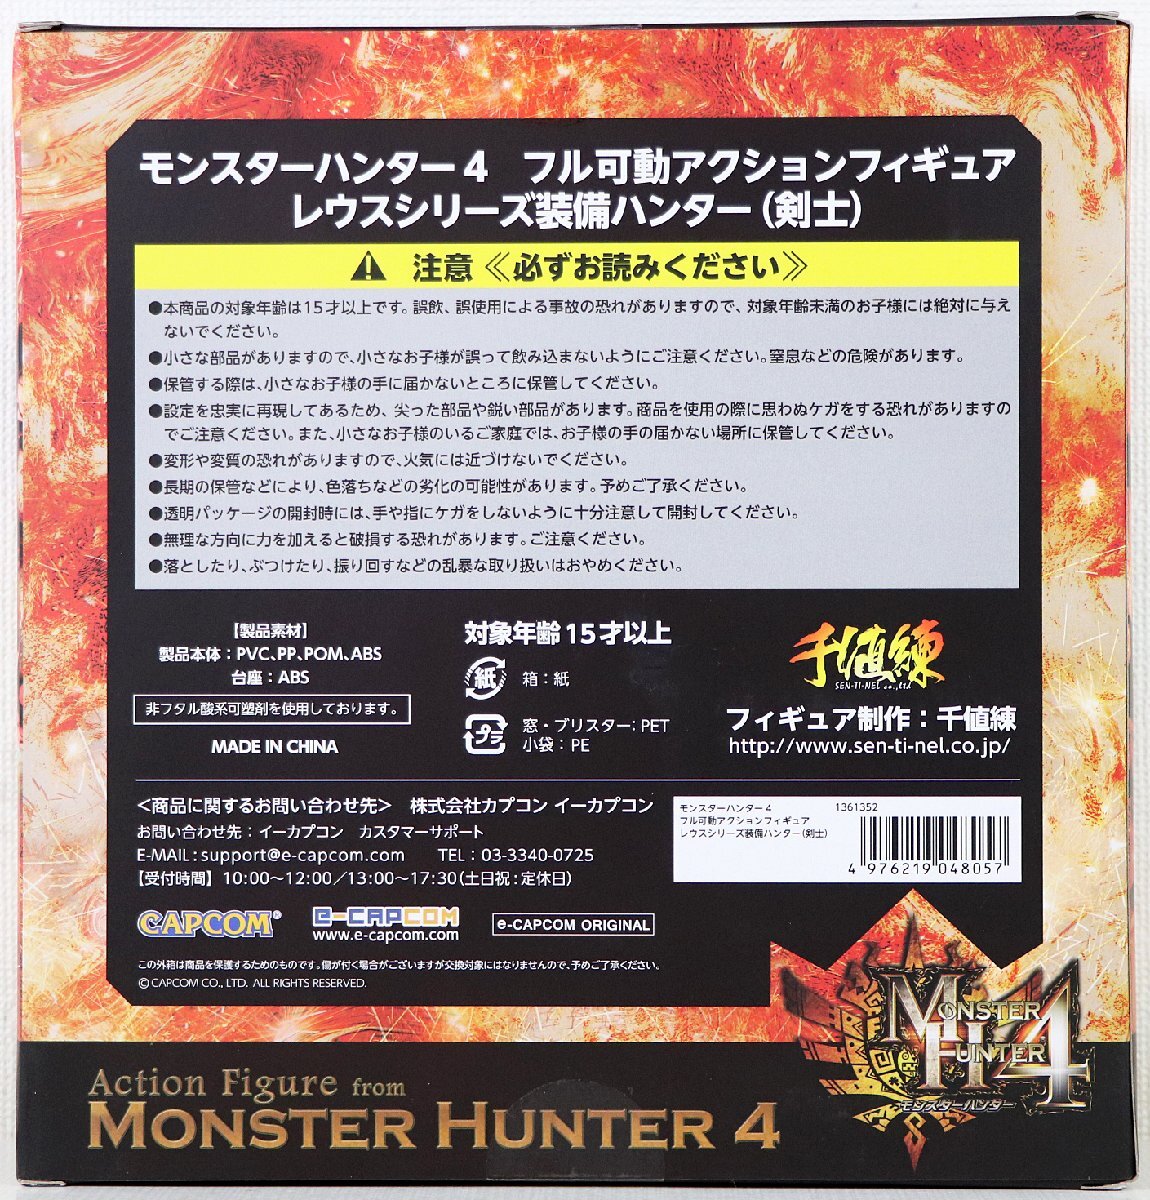 S! не использовался товар! фигурка Monstar Hunter 4 [re незначительный серии оборудование Hunter (..)] CAPCOM полный передвижной action фигурка * нераспечатанный 